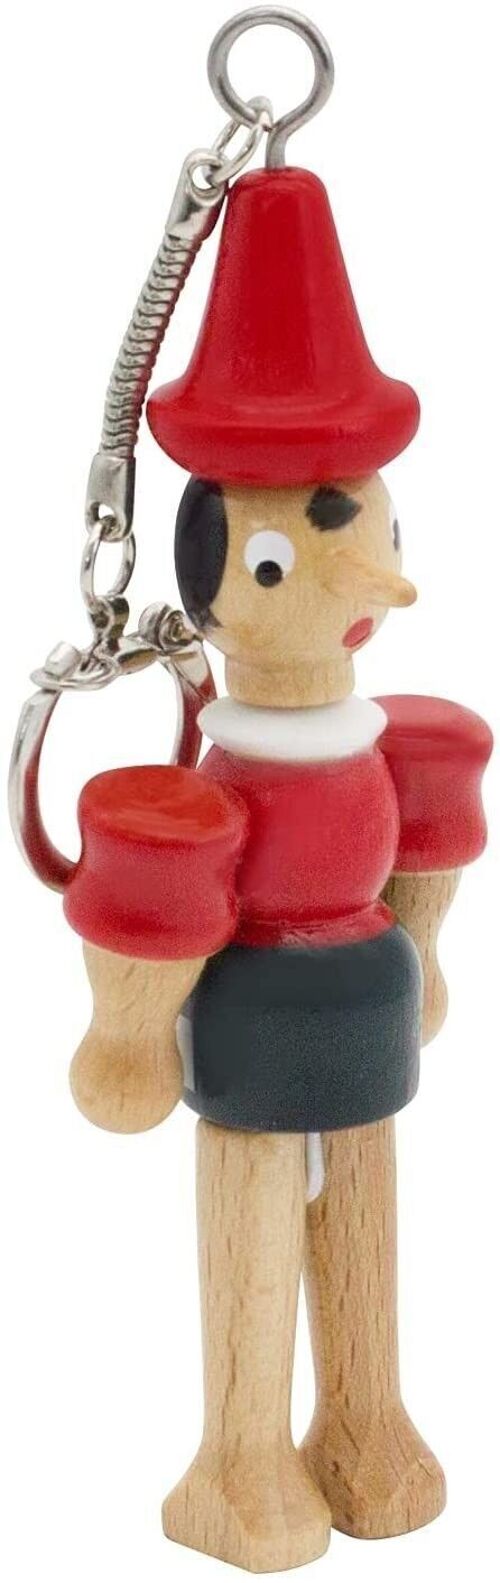 Pinocchio aus Holz, 10 cm, Schlüsselanhänger - 9029